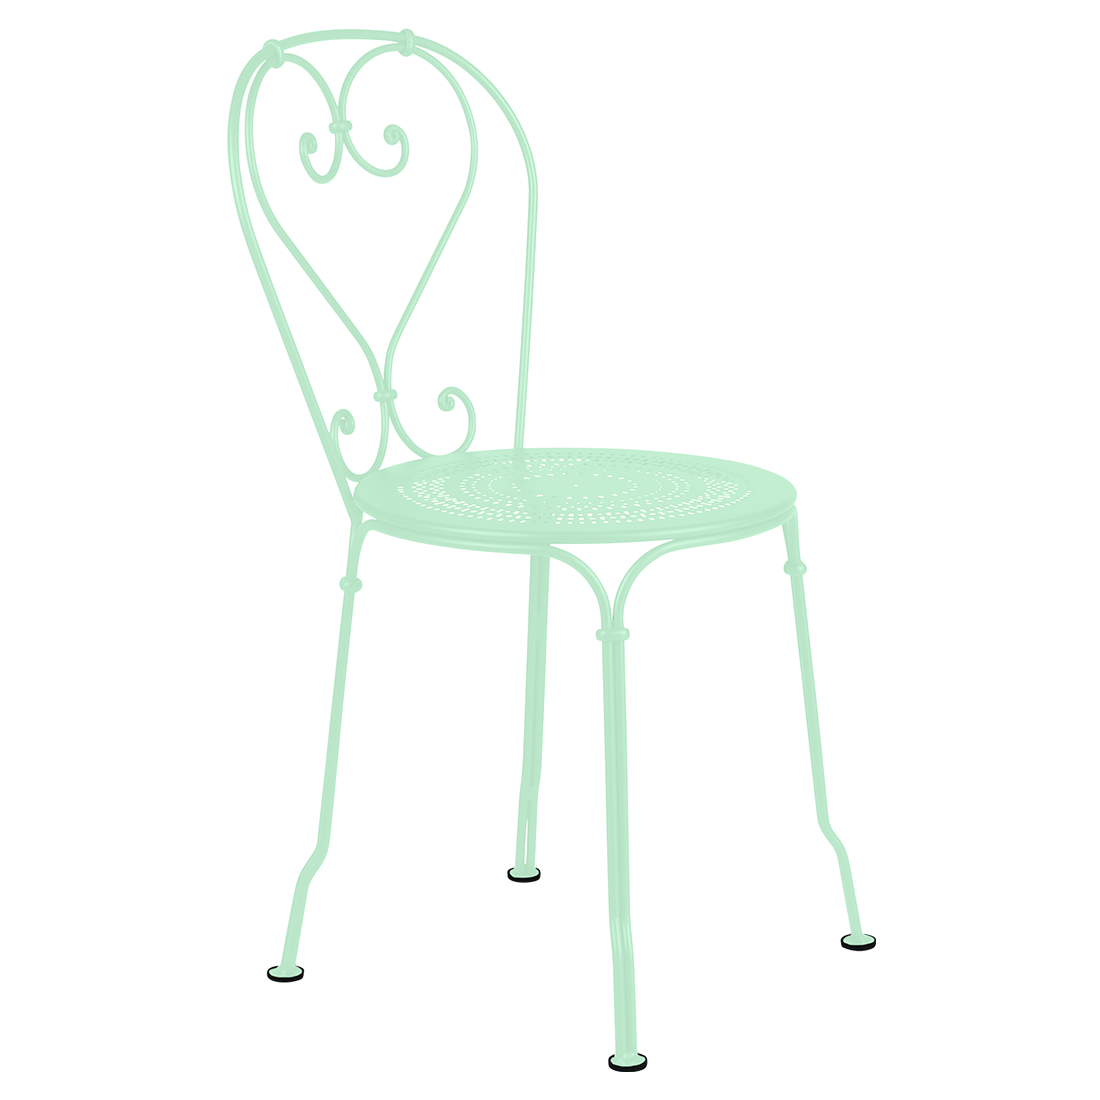 Patins 1900 - patins pour chaises, fauteuils et tables 1900 - Fermob